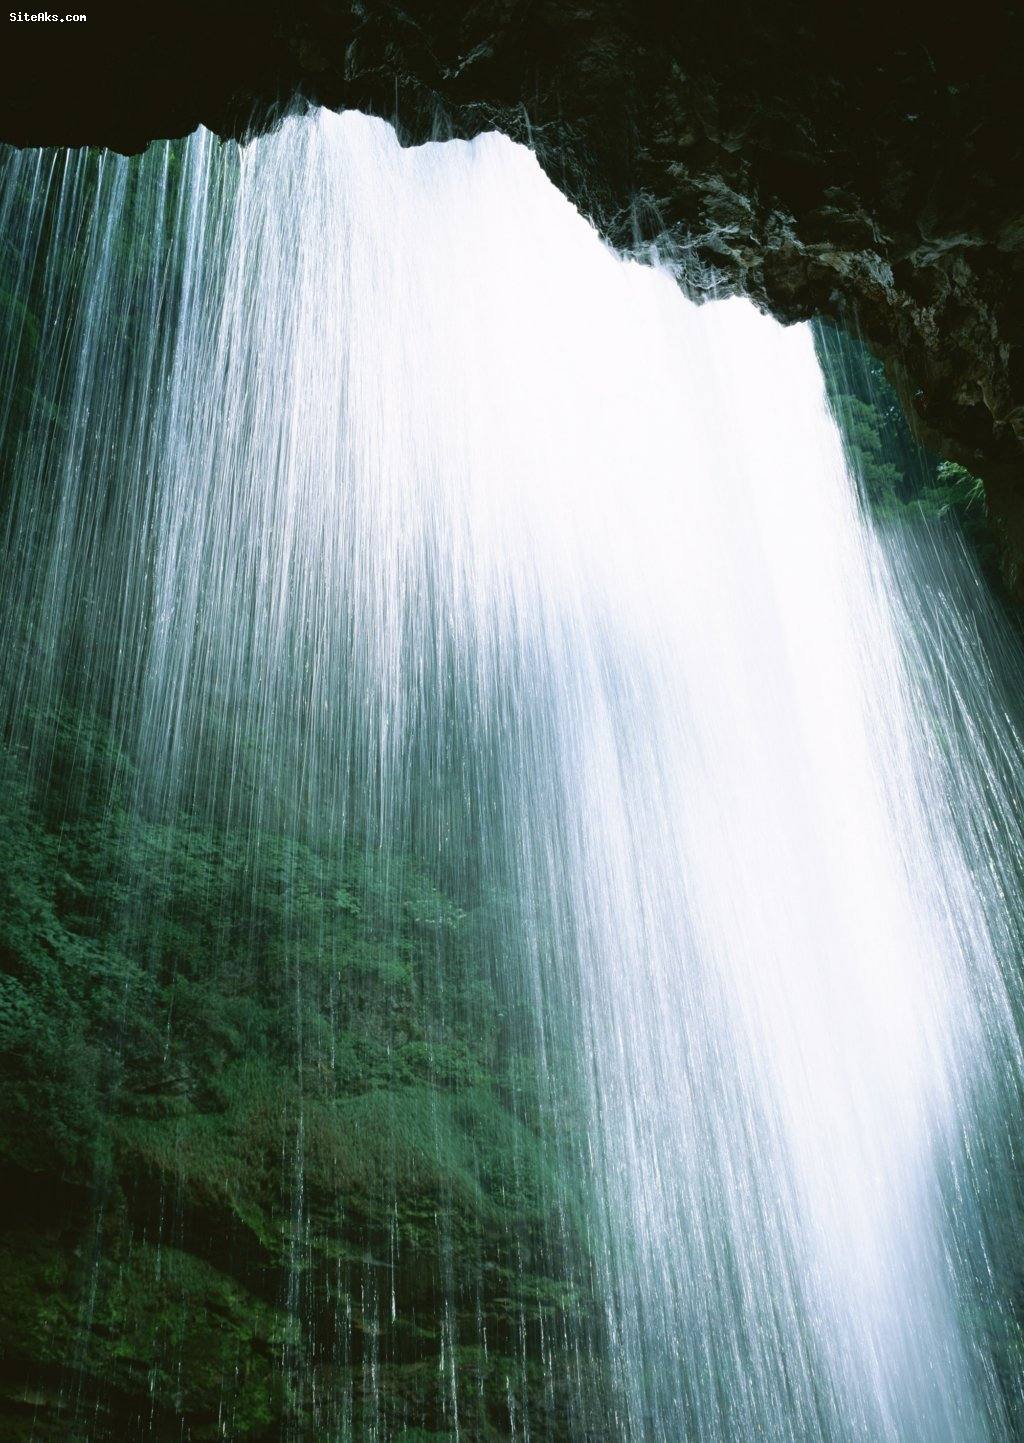 عکس آبشارهای زیبا و رویایی,آبشار نیاگارا,آبشار تهران,[categoriy]